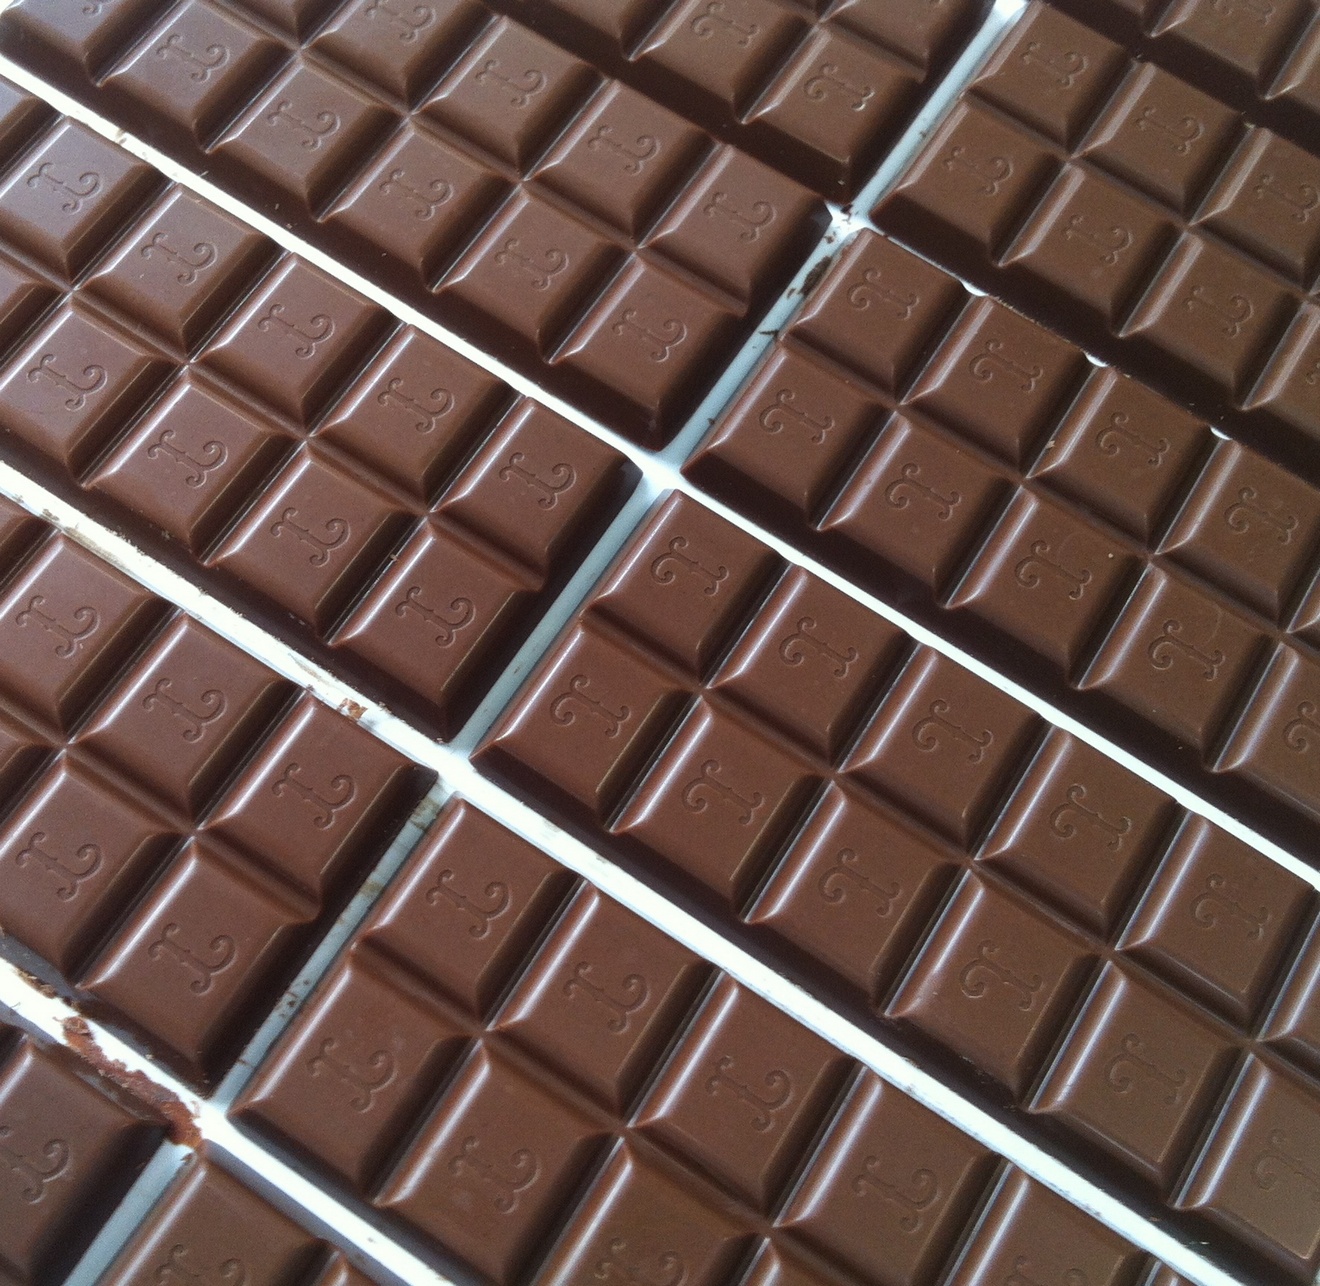 Produzione Cioccolato Tavolette al Latte